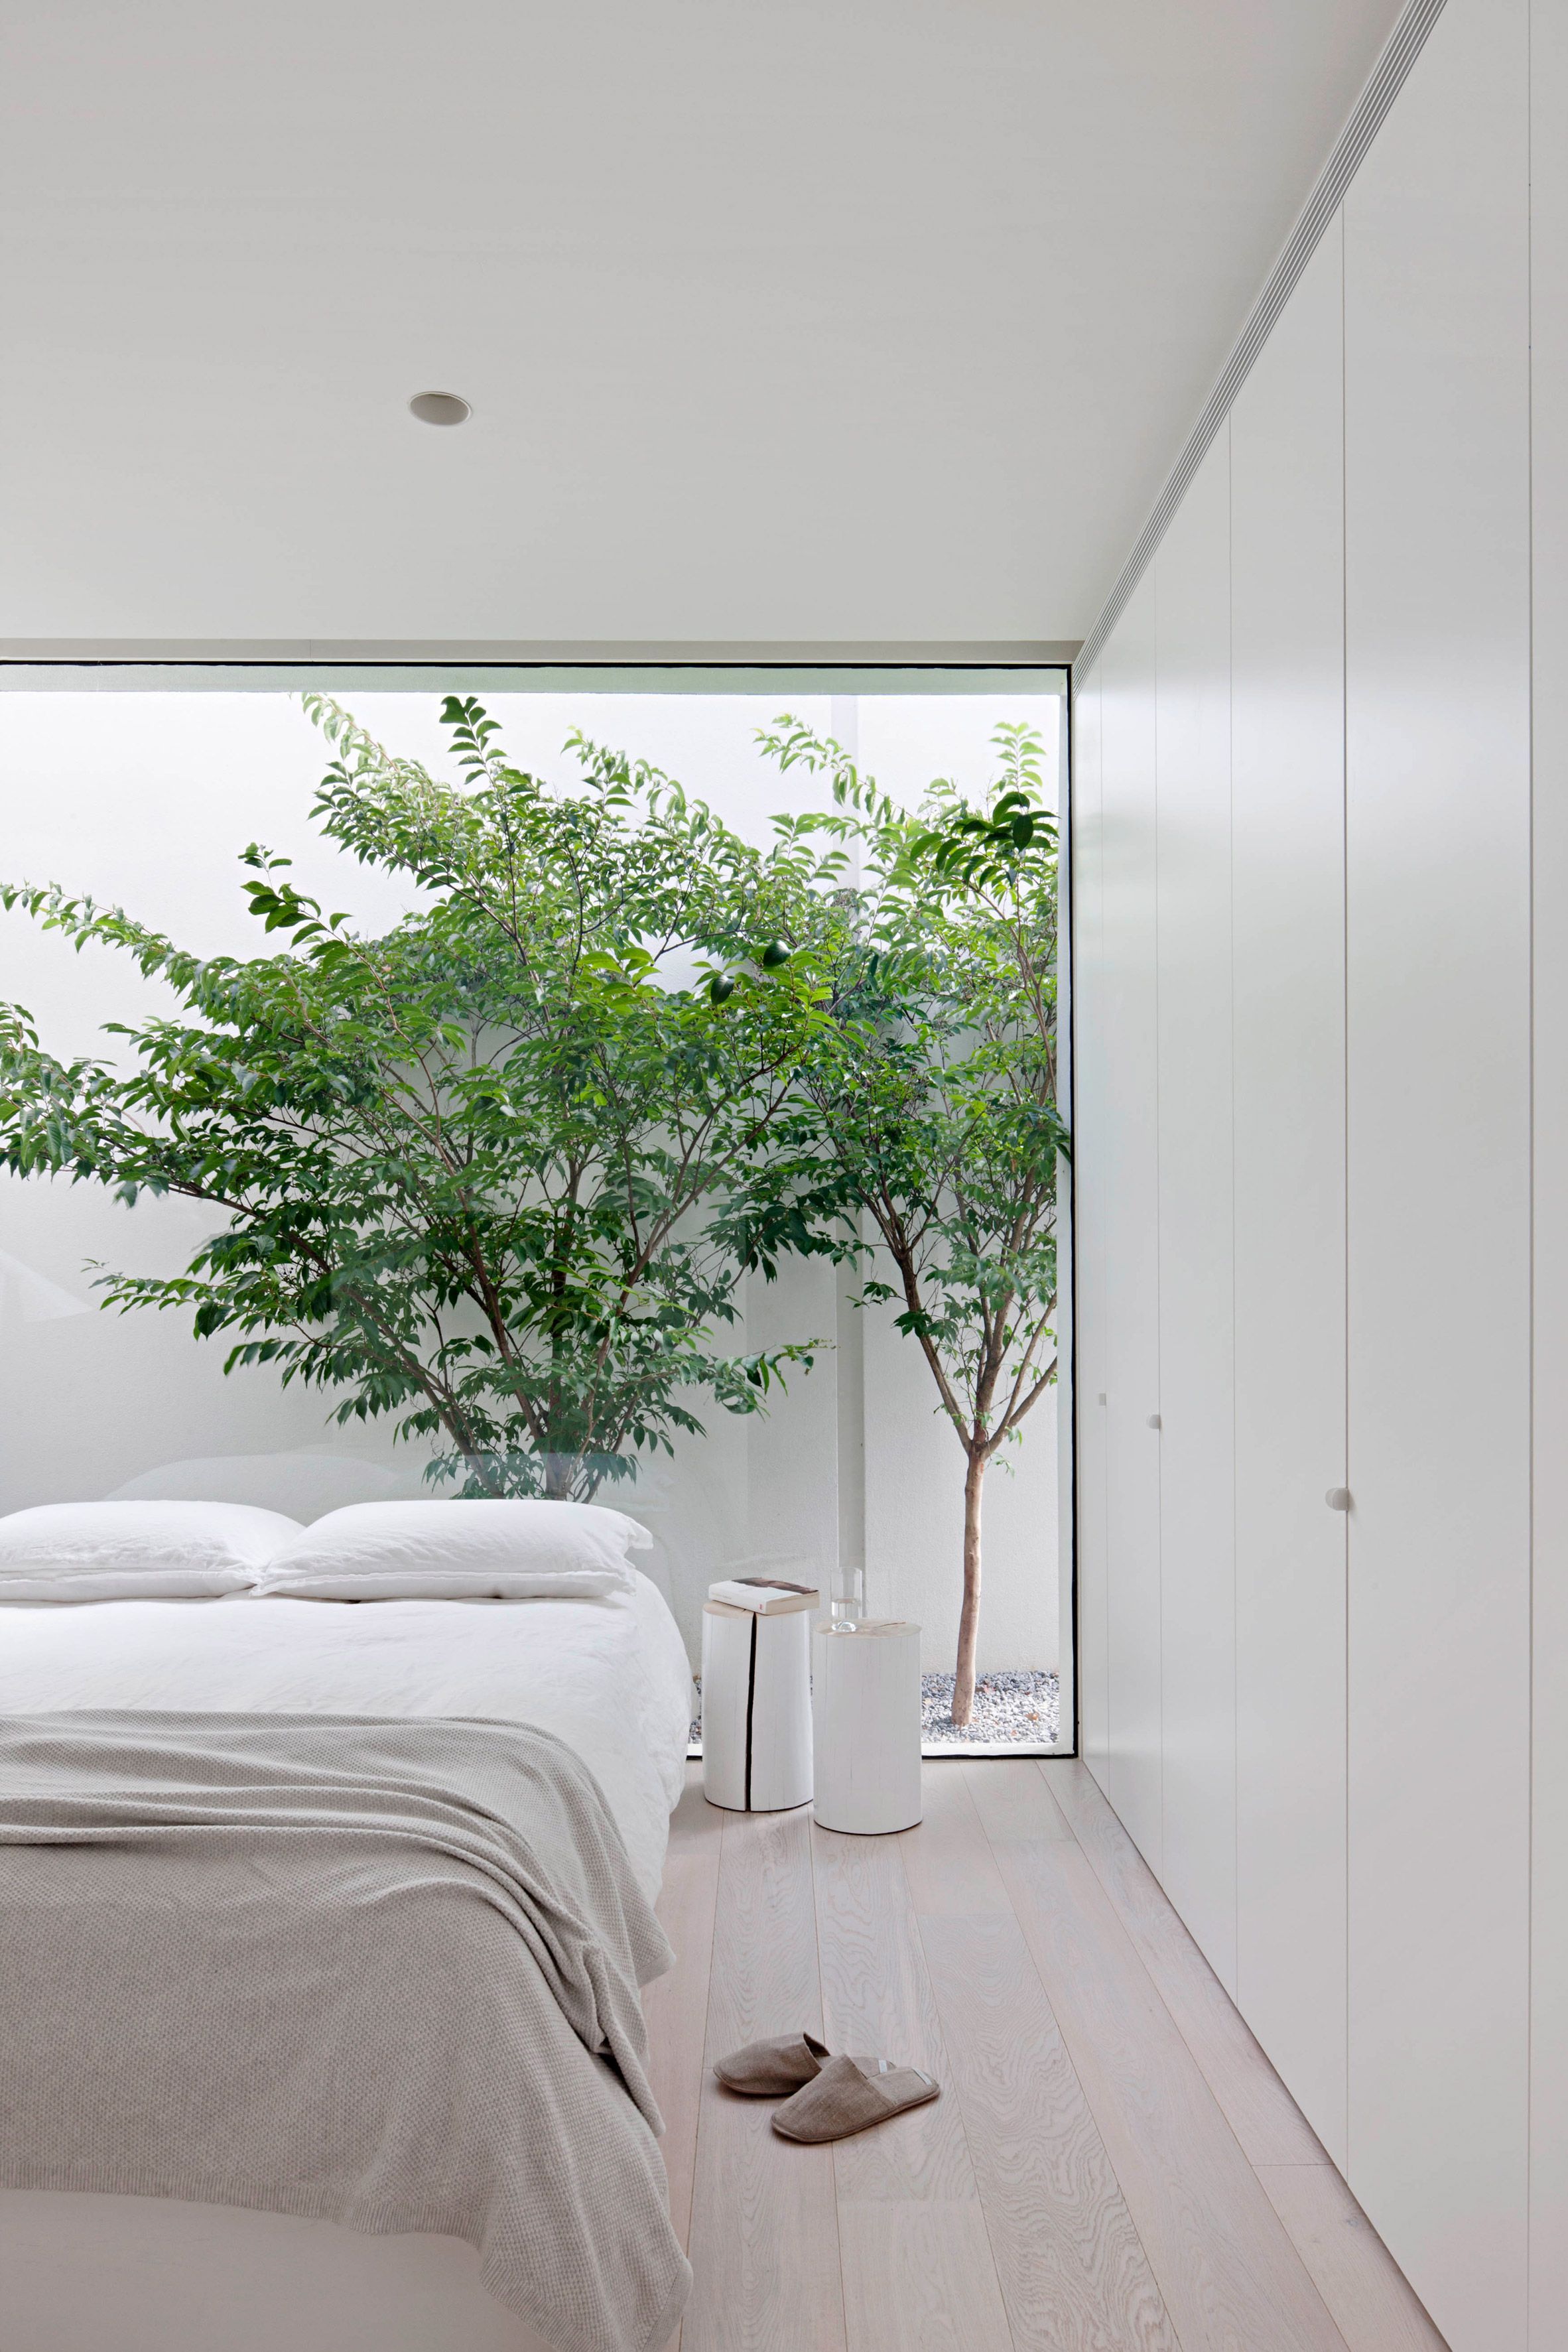 13 gợi ý thiết kế tường kính cho phòng ngủ để hưởng trọn tầm nhìn tuyệt đẹp bên ngoài - Ảnh 2.